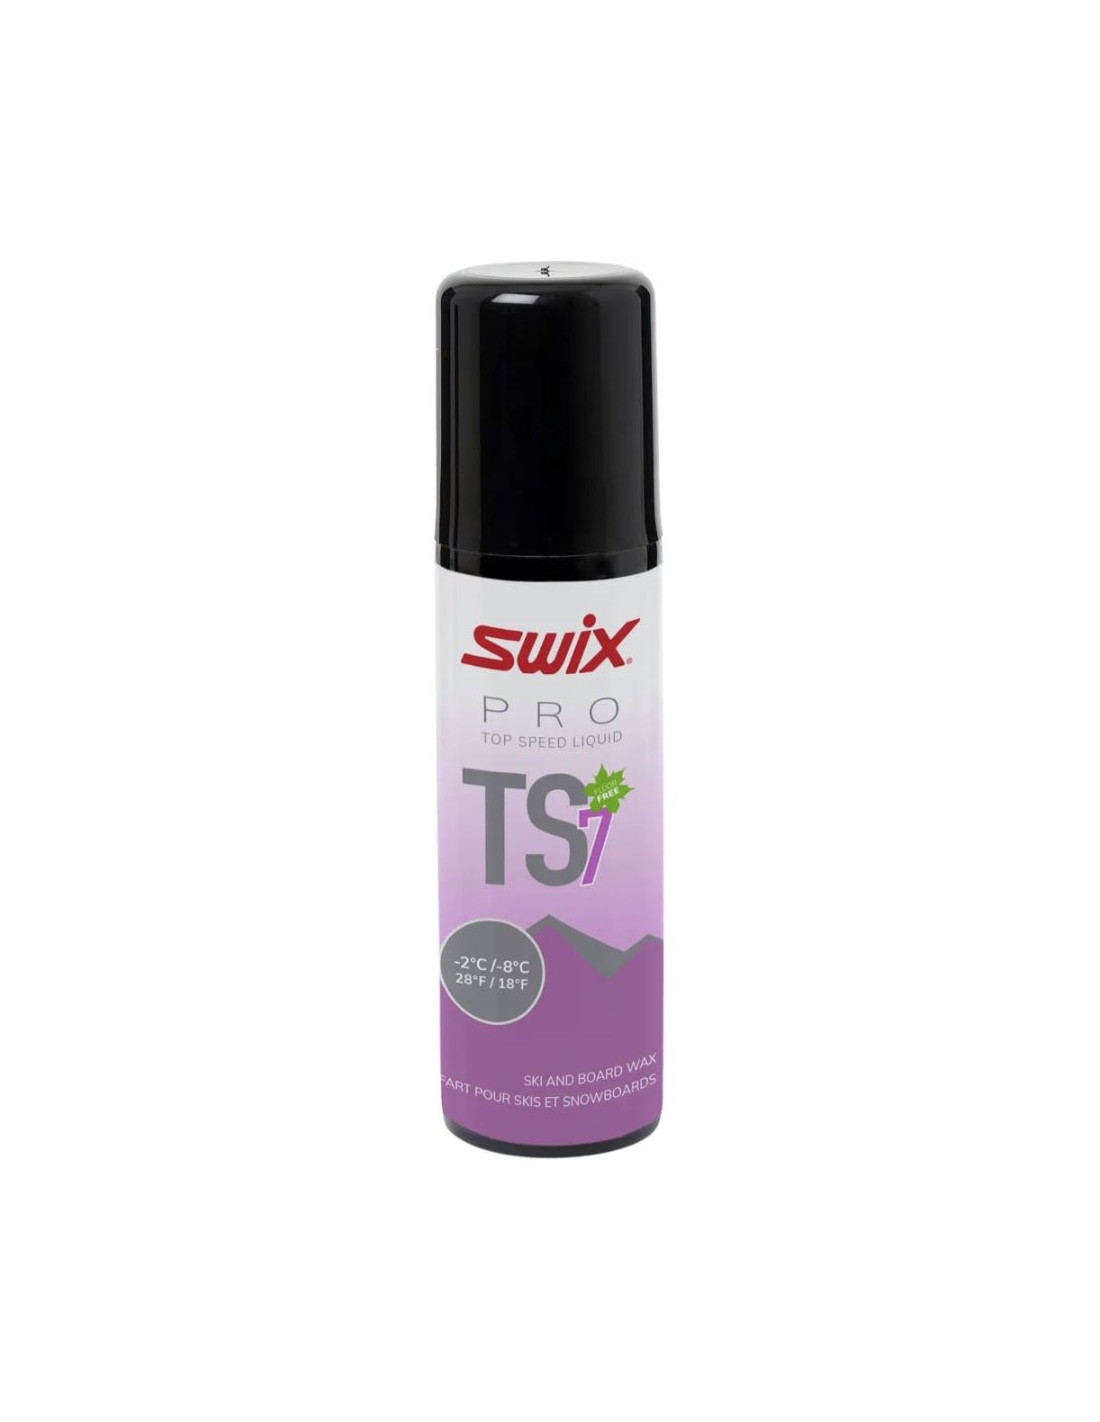 Swix TS7 Liquid Violet -2°C/-7°C 50ml Wachsart - Flüssigwachs, Wachsfarbe - Universal/Transparent, Wachs Swix - -2° bis -8°, Wachsqualität - High Performance, von Swix